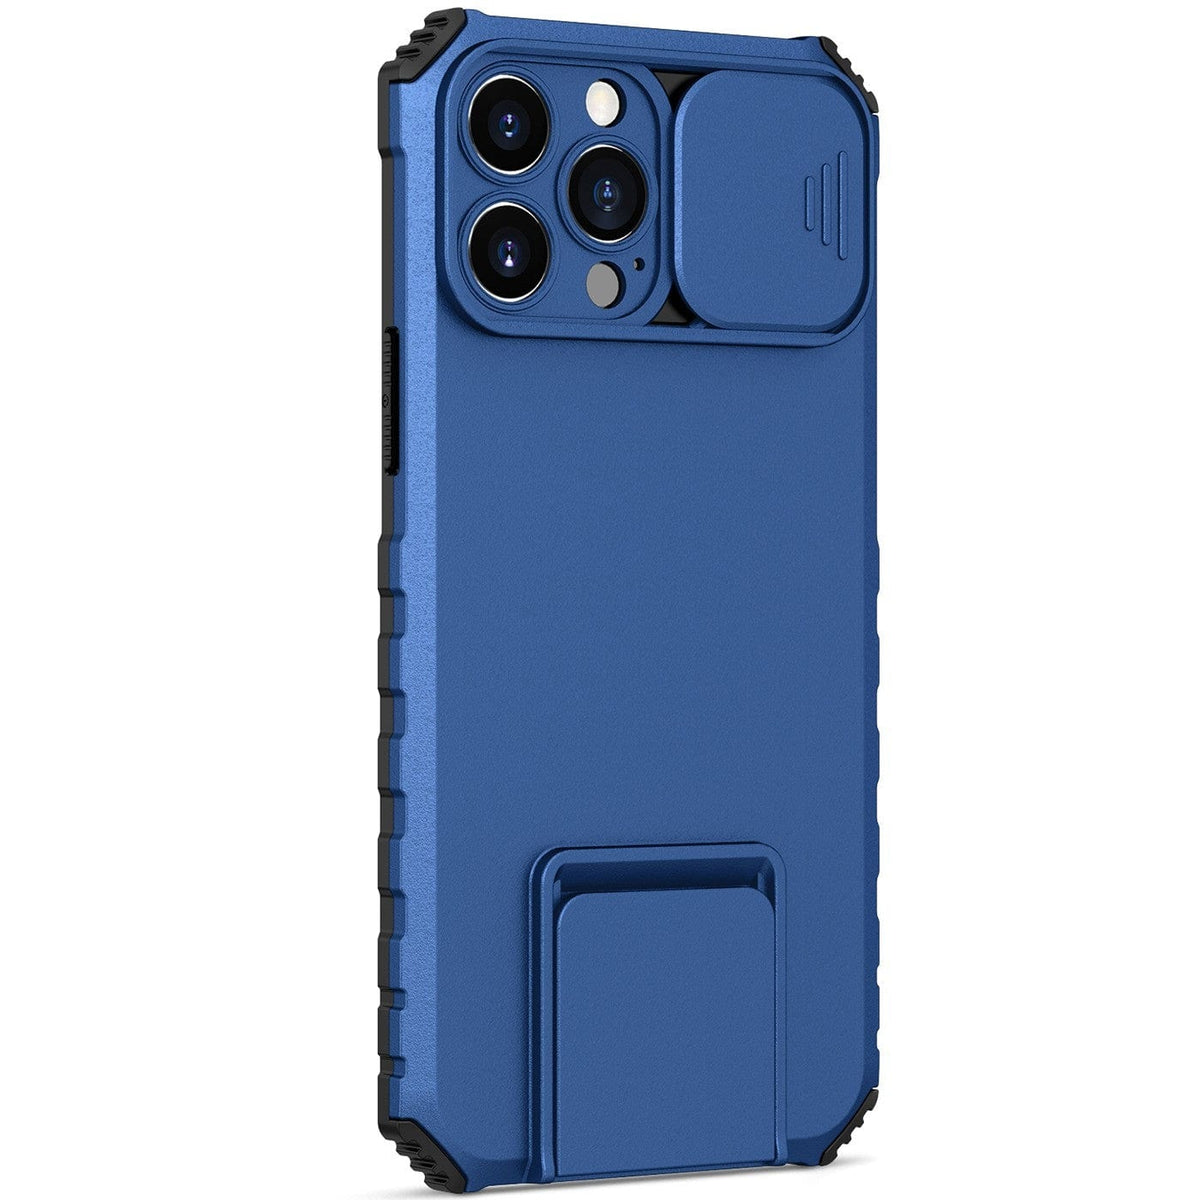 Husa Defender cu Stand pentru iPhone 12 Pro, Albastru, Suport reglabil, Antisoc, Protectie glisanta pentru camera